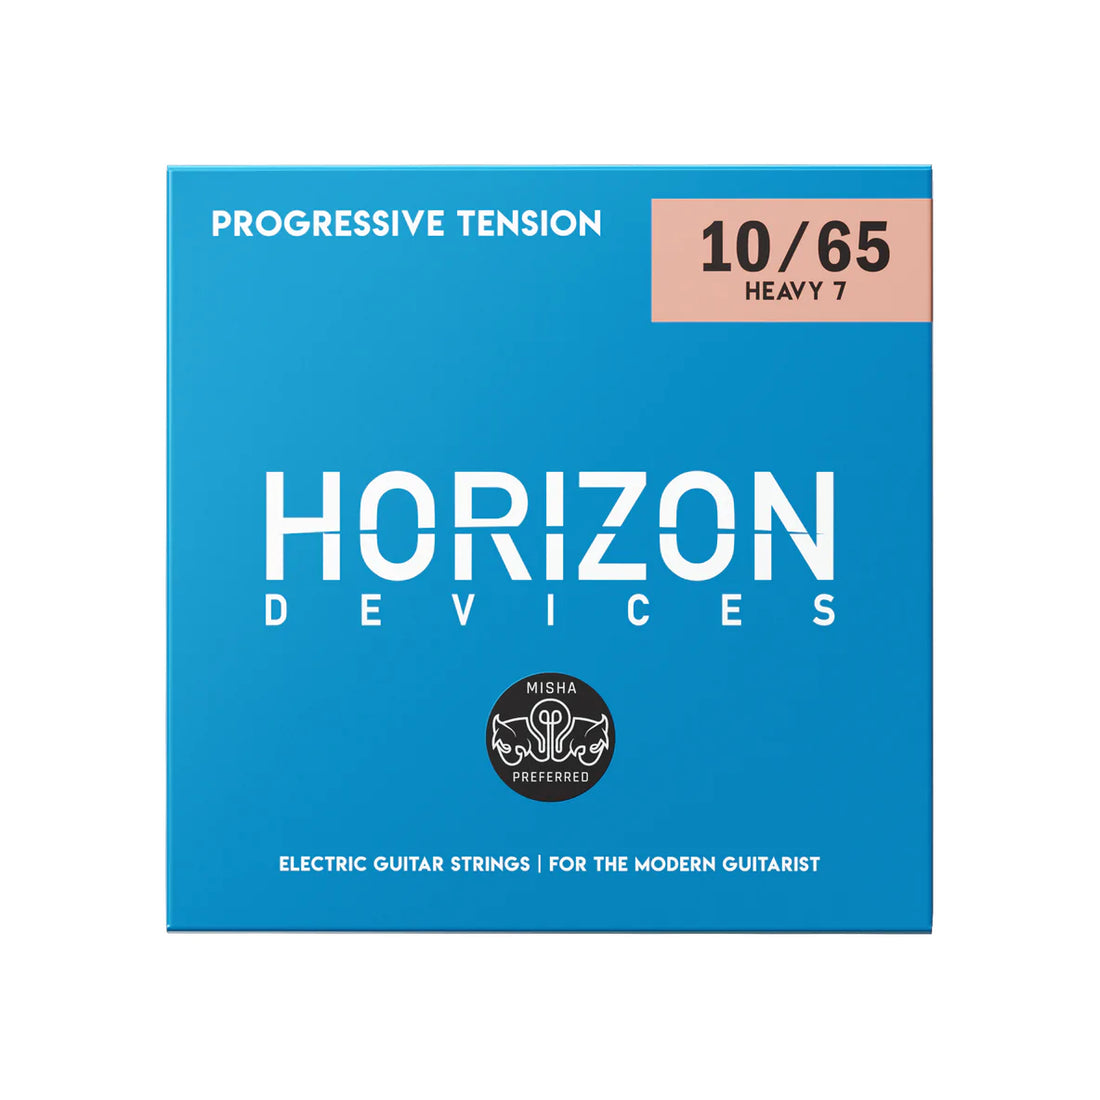 Horizon Devices Progressive Tension Heavy 7 (Misha Preferred)